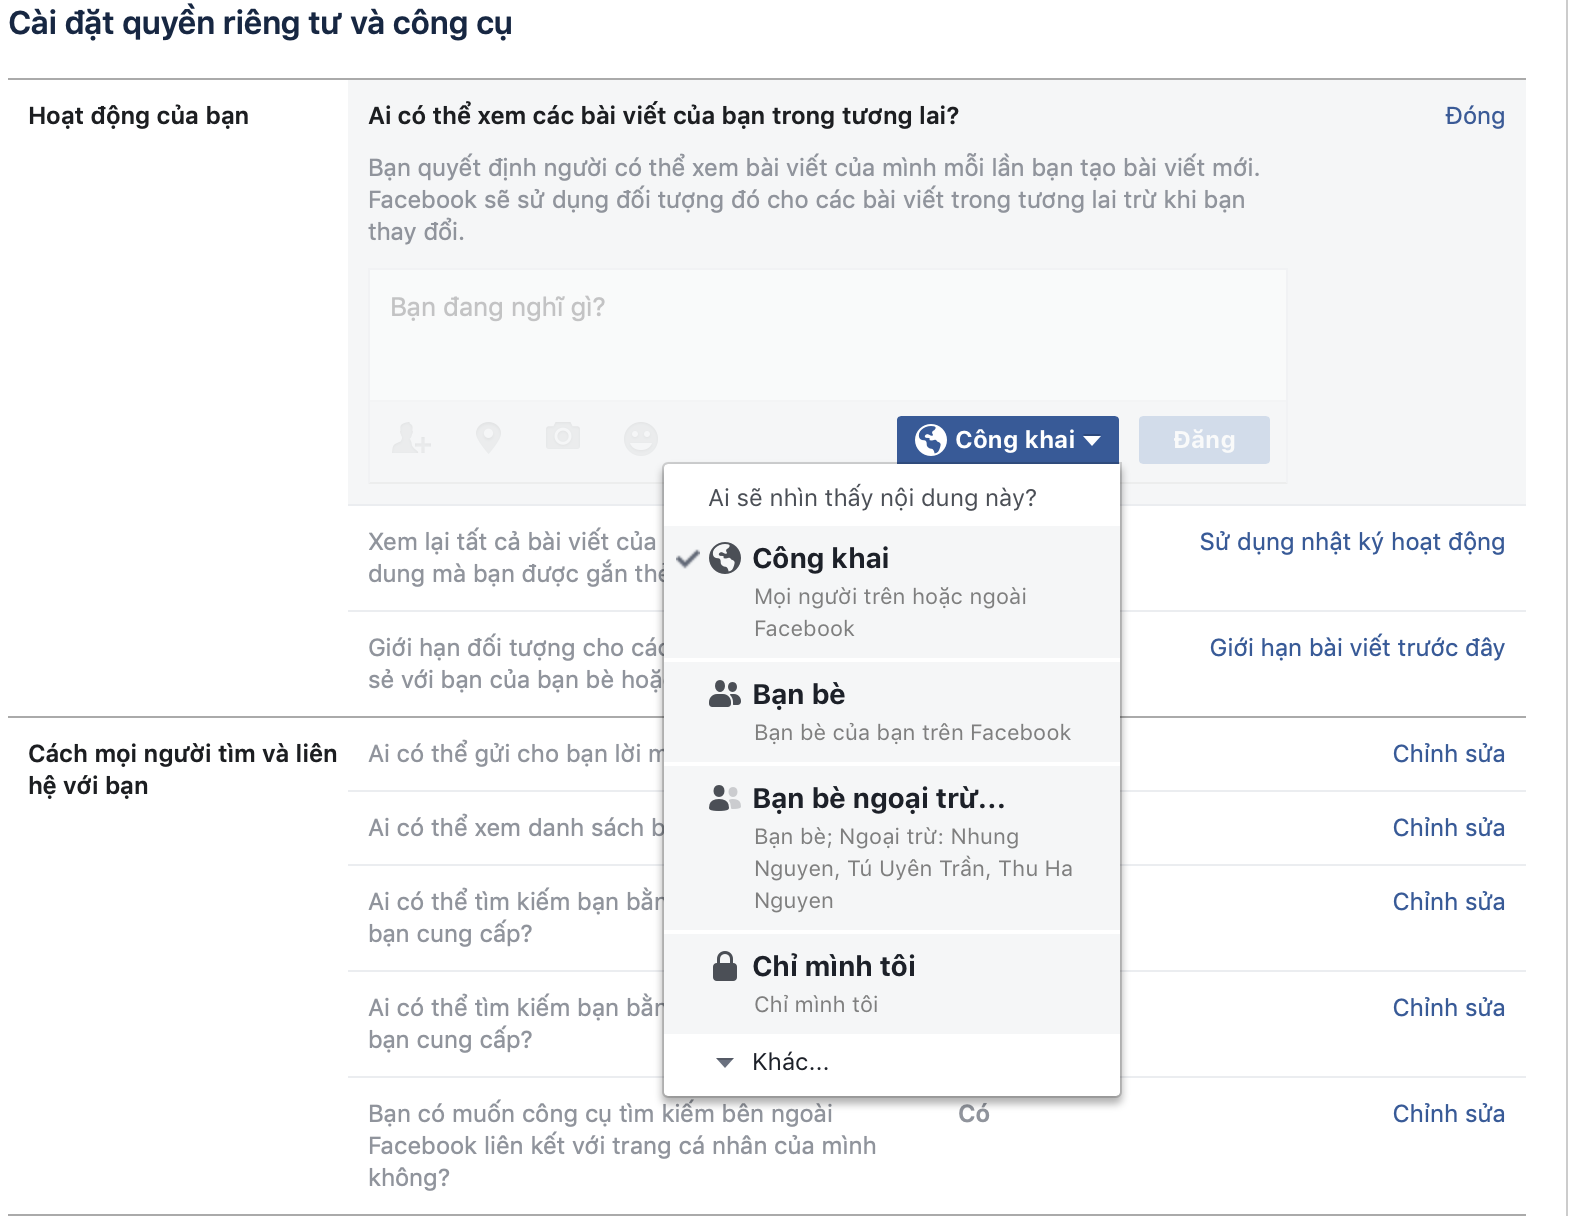 Đây là cách để bảo vệ sự riêng tư của bạn trên Facebook